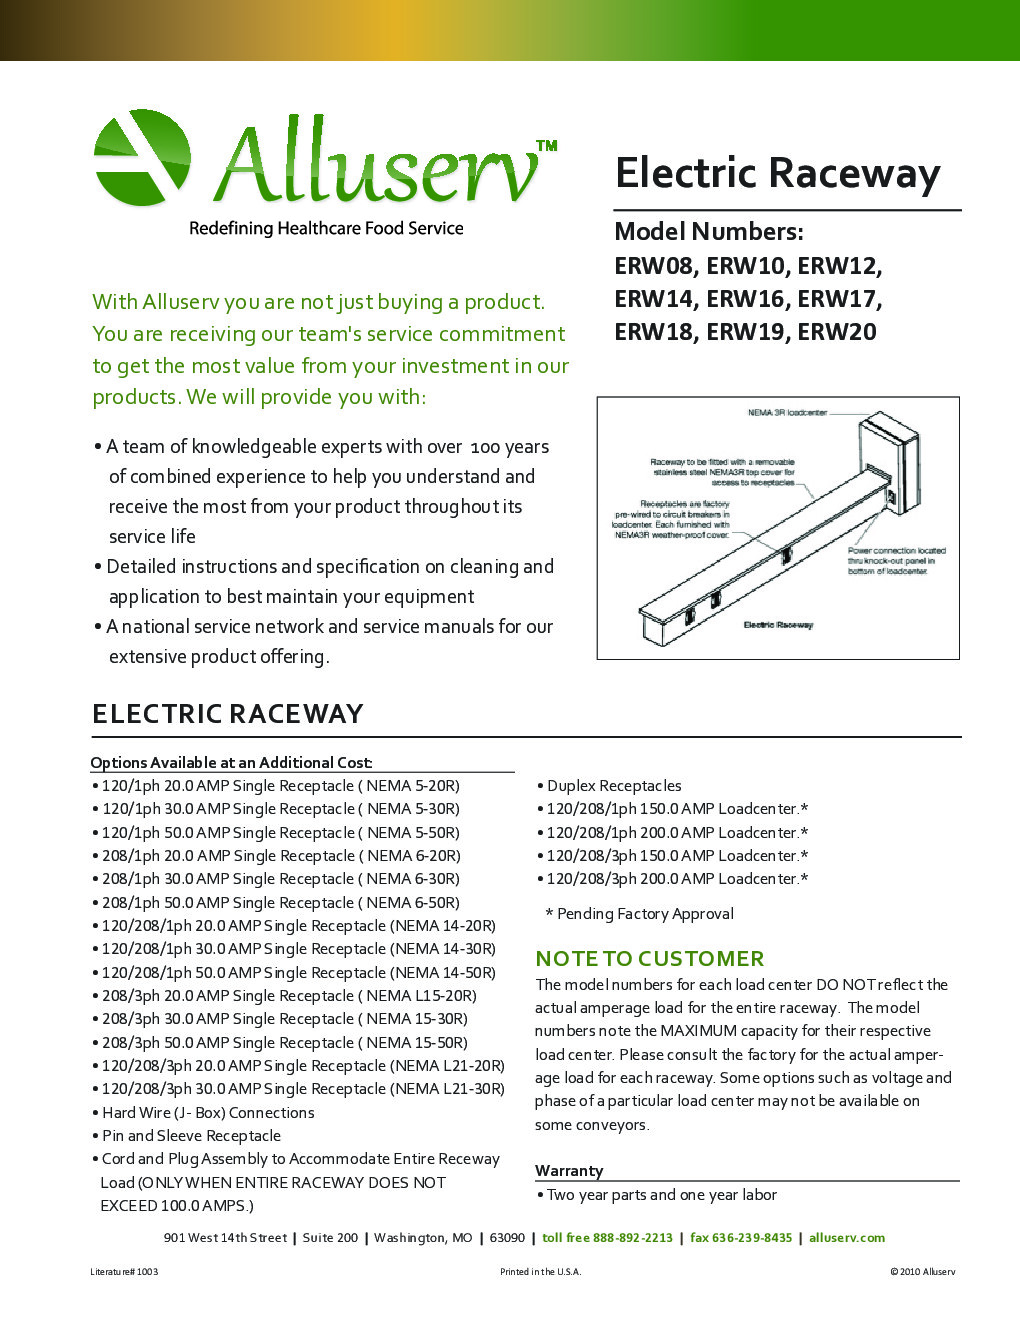 Alluserv ERW18 Electrical Raceway, 18 foot